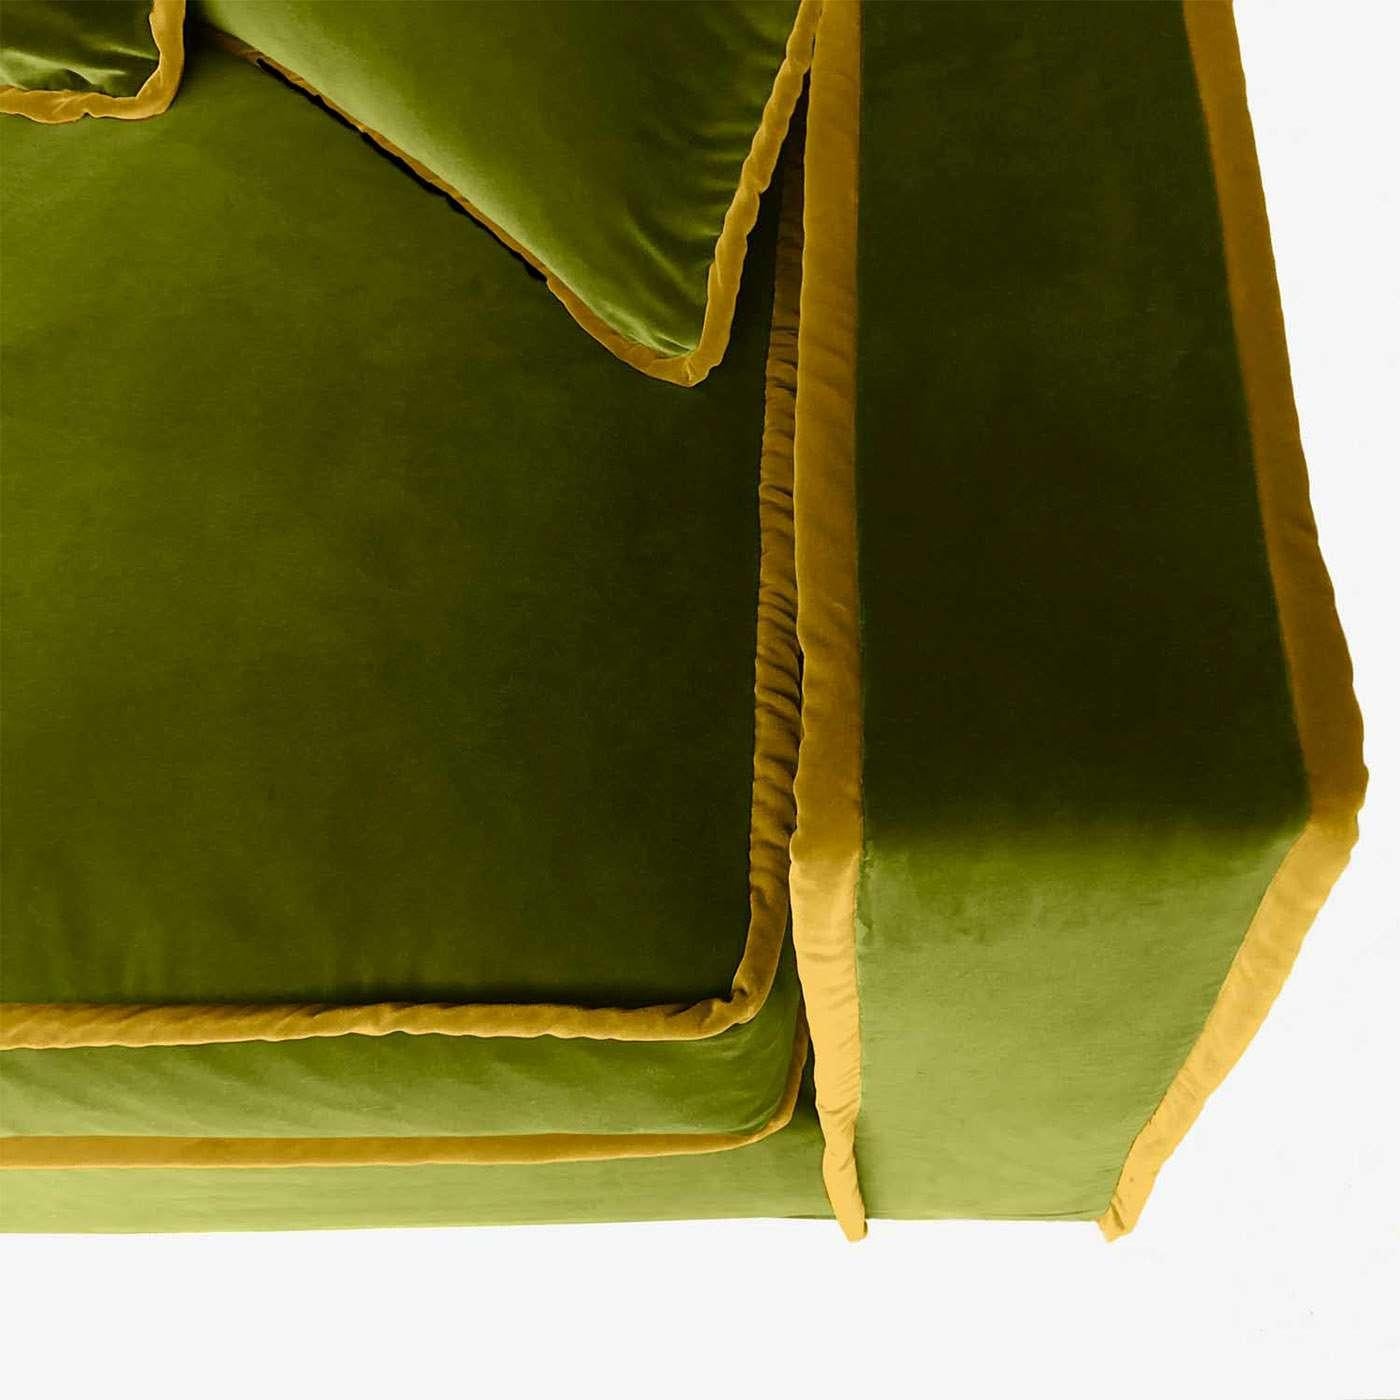 Ce canapé luxueux et généreux est doux au toucher et ultra confortable. Les sièges profonds et le tissu doux font que s'y enfoncer est un vrai plaisir. Le profil angulaire de Rafaella donne à ce style de renouveau une touche de modernité, et ses